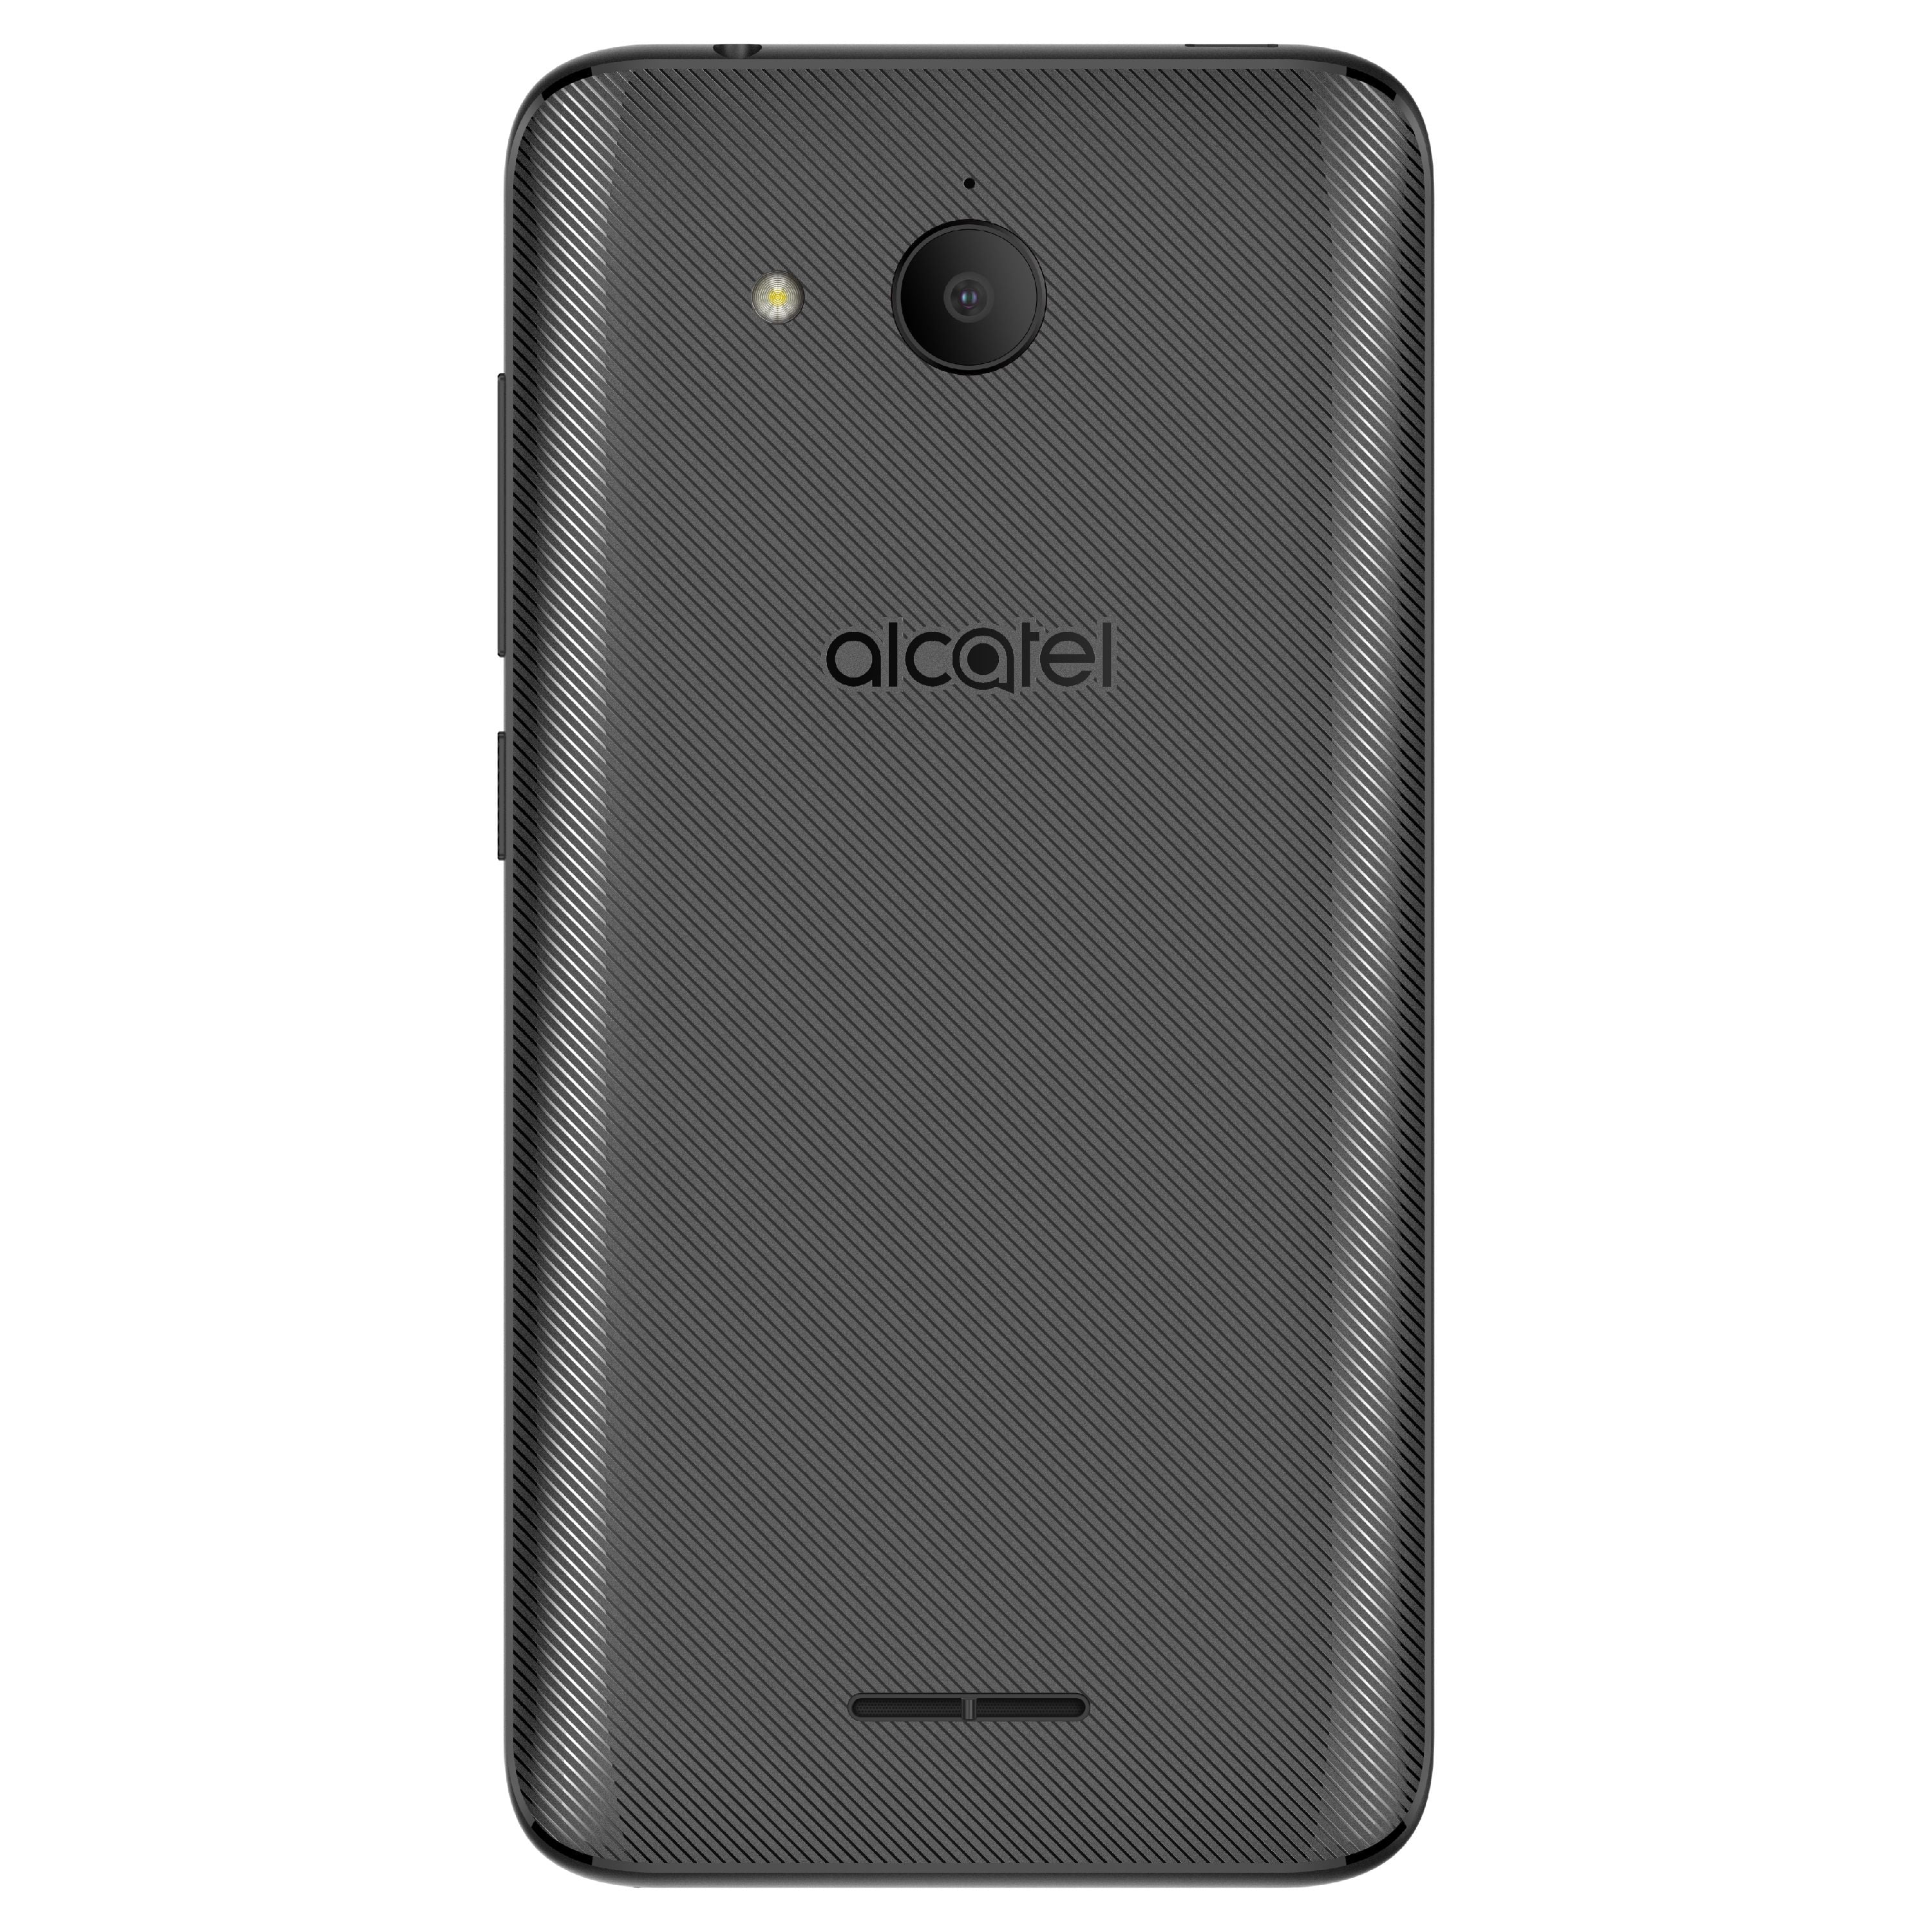 AT&T Prepaid Alcatel TETRA 16GB Prepaid Smartphone, Black 